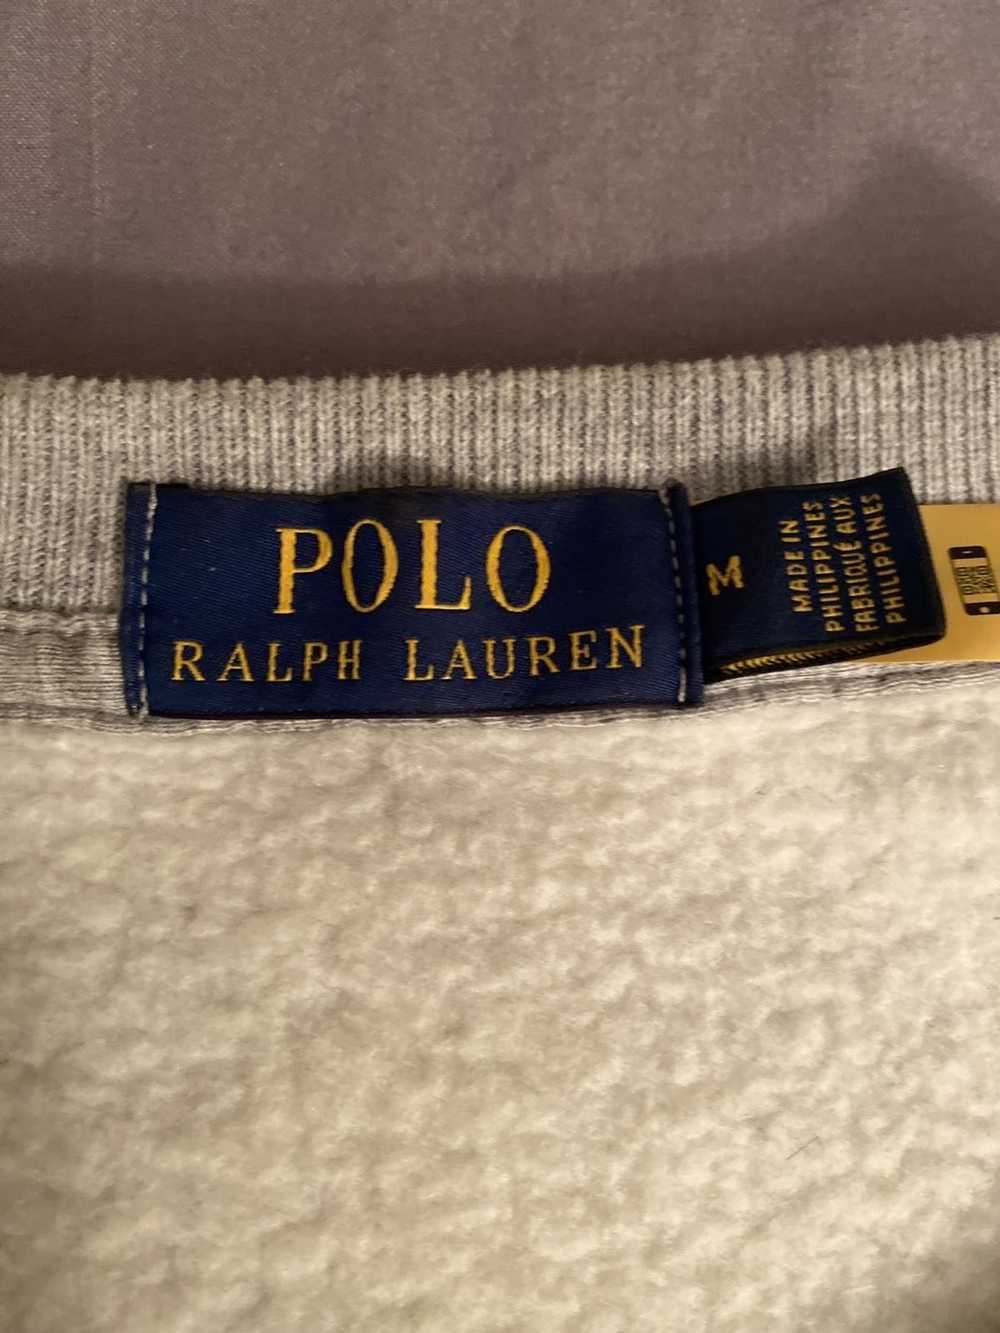 Polo Ralph Lauren Polo Ralph Lauren sweatshirt - image 2